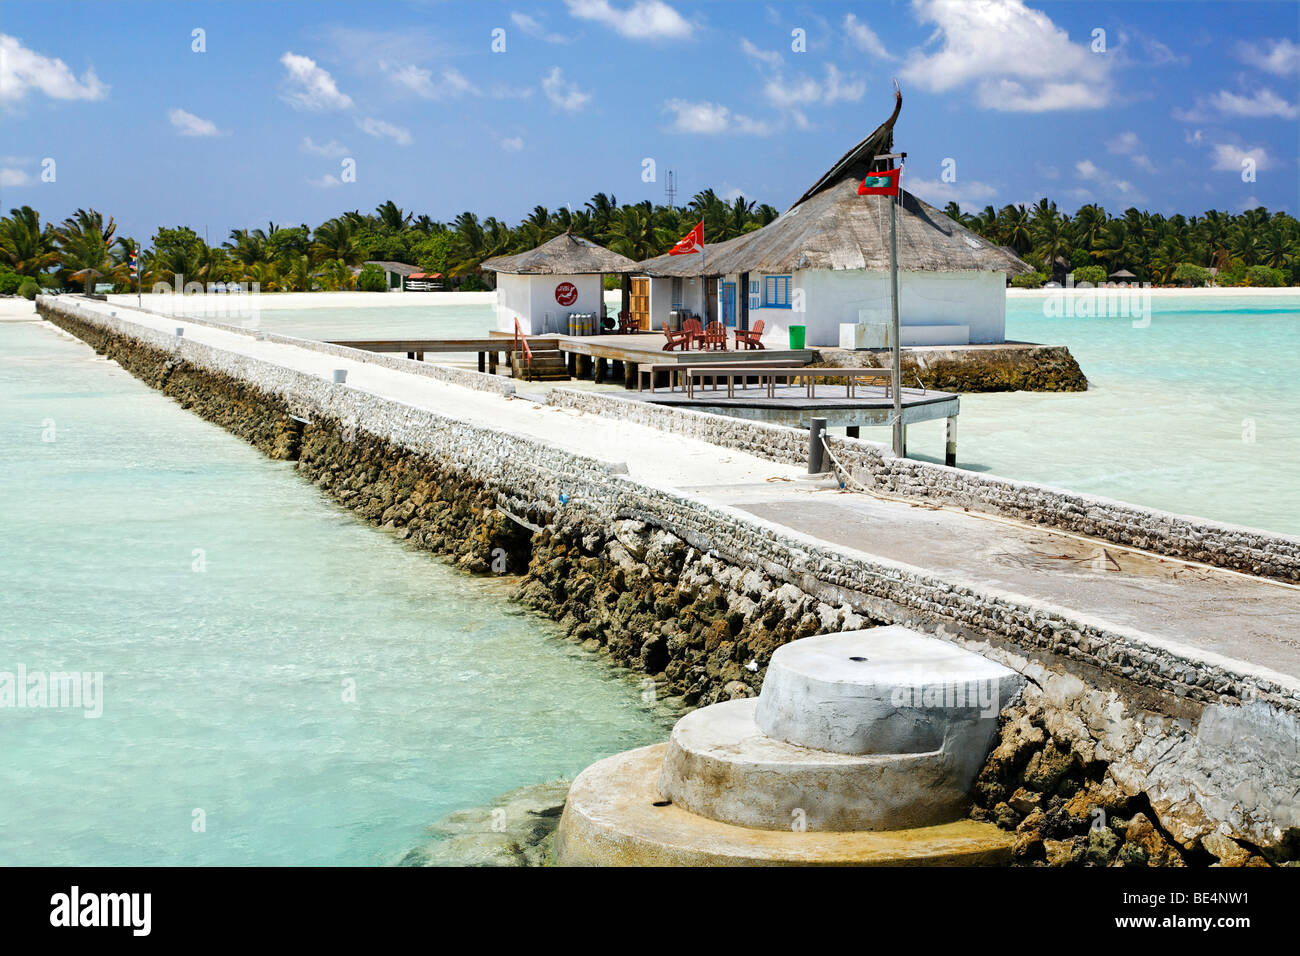 Magasin de plongée, les plongeurs de l'euro, jetty, Maldive island, South Male Atoll, Maldives, Achipelago, Asie, Océan Indien Banque D'Images